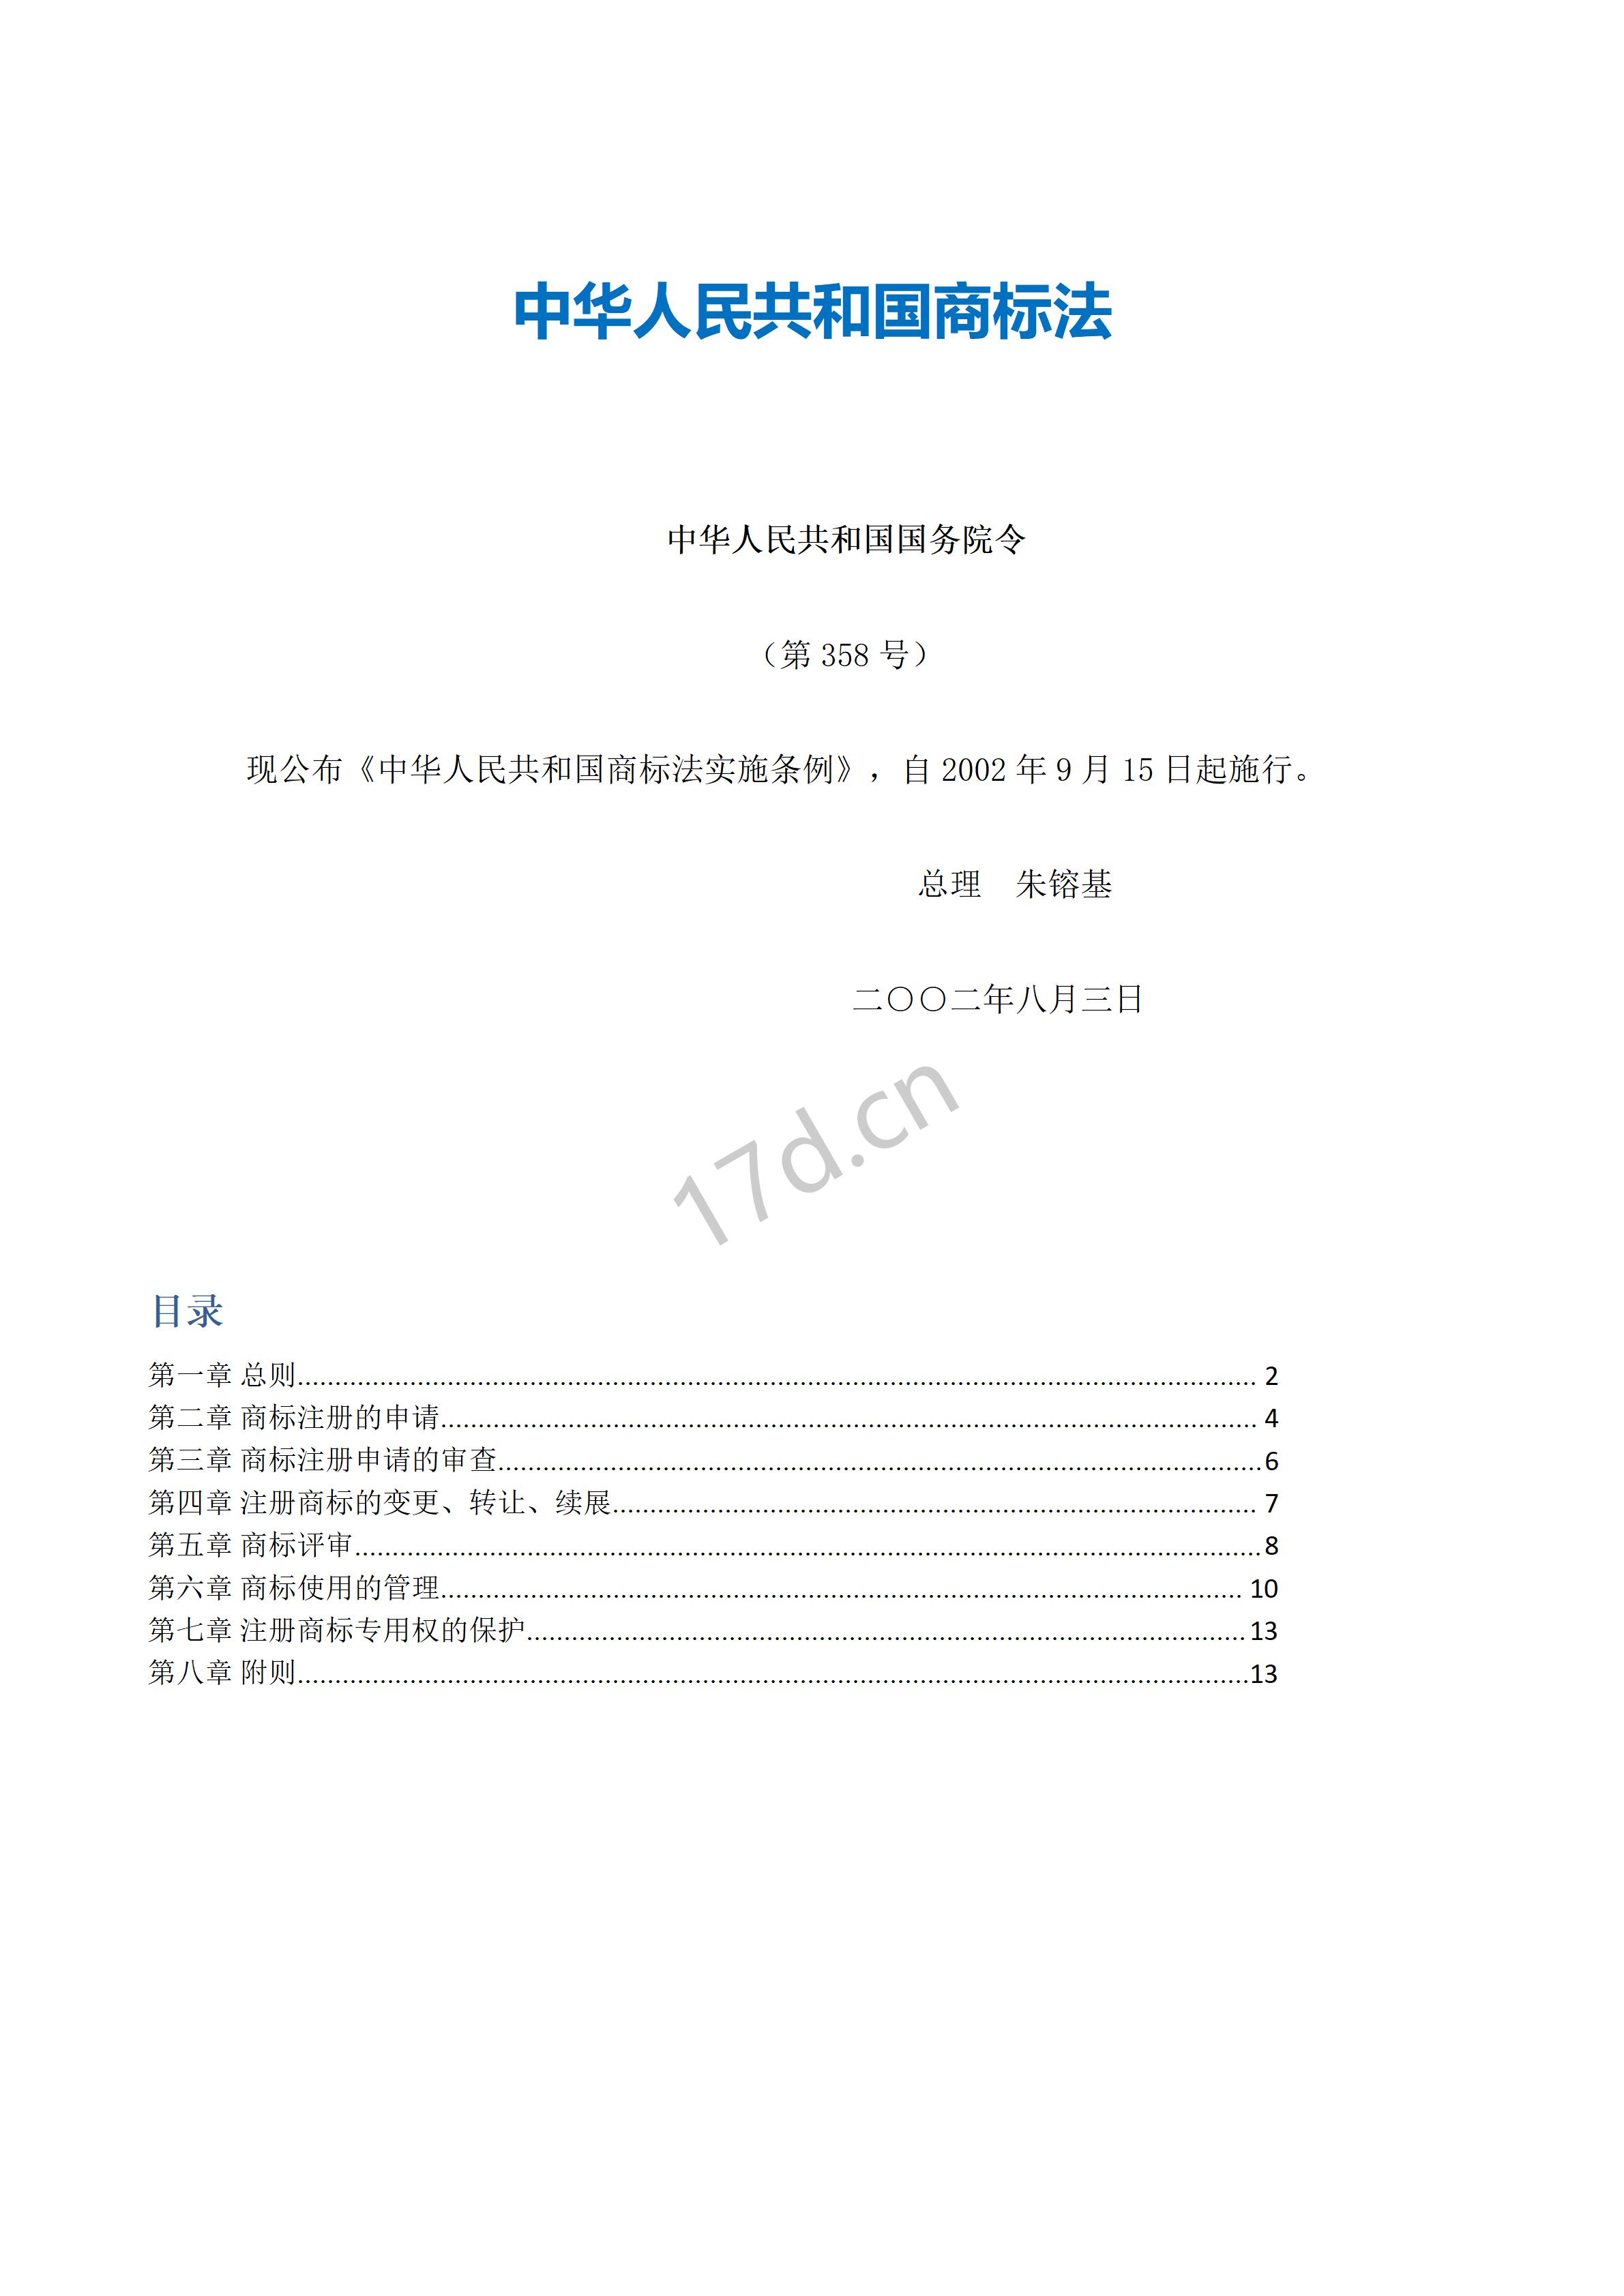 2中华人民共和国商标法实施条例_01.jpg